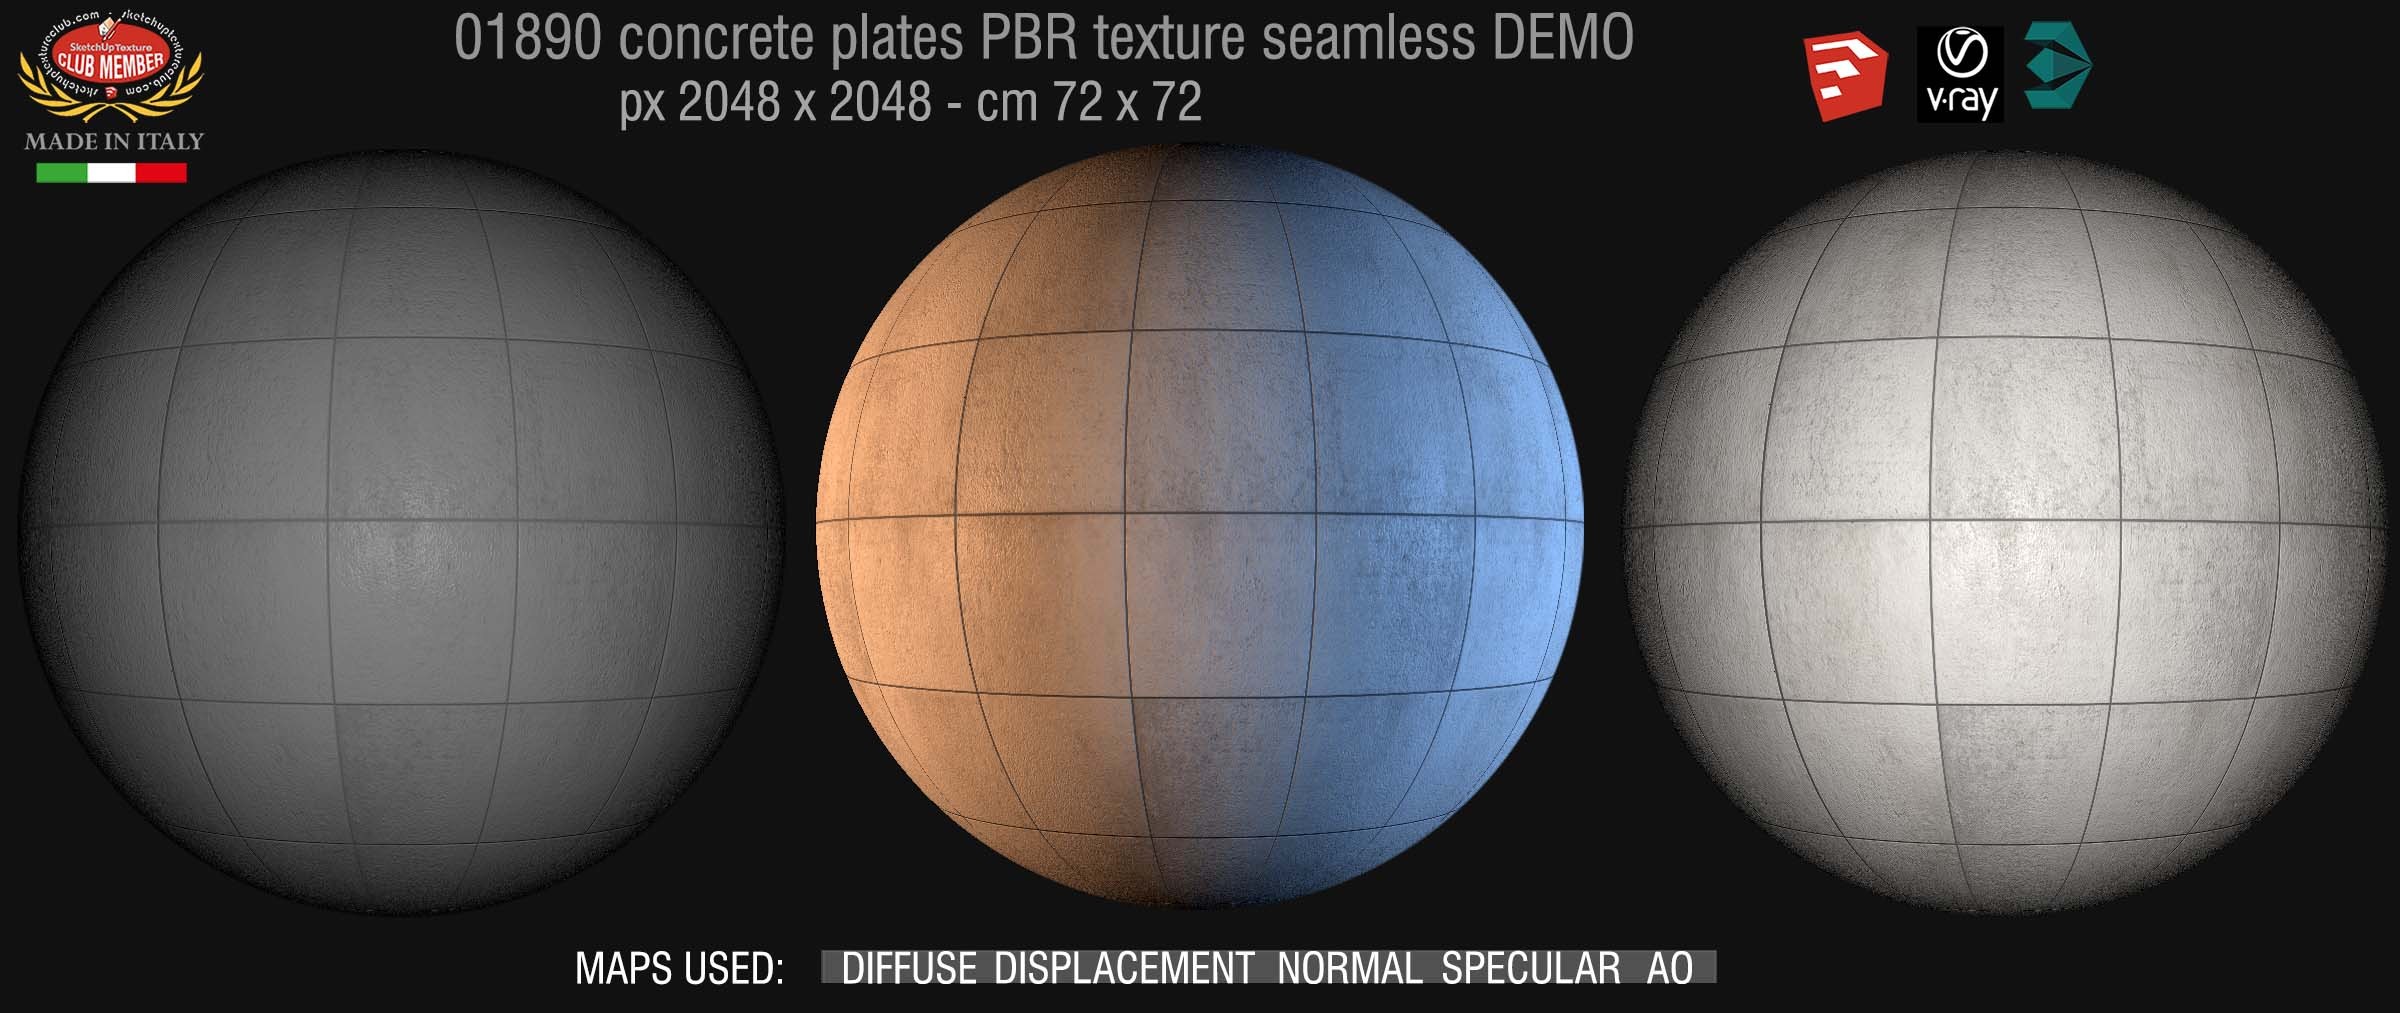 01890 tadao ando concrete plates PBR texture seamless DEMO